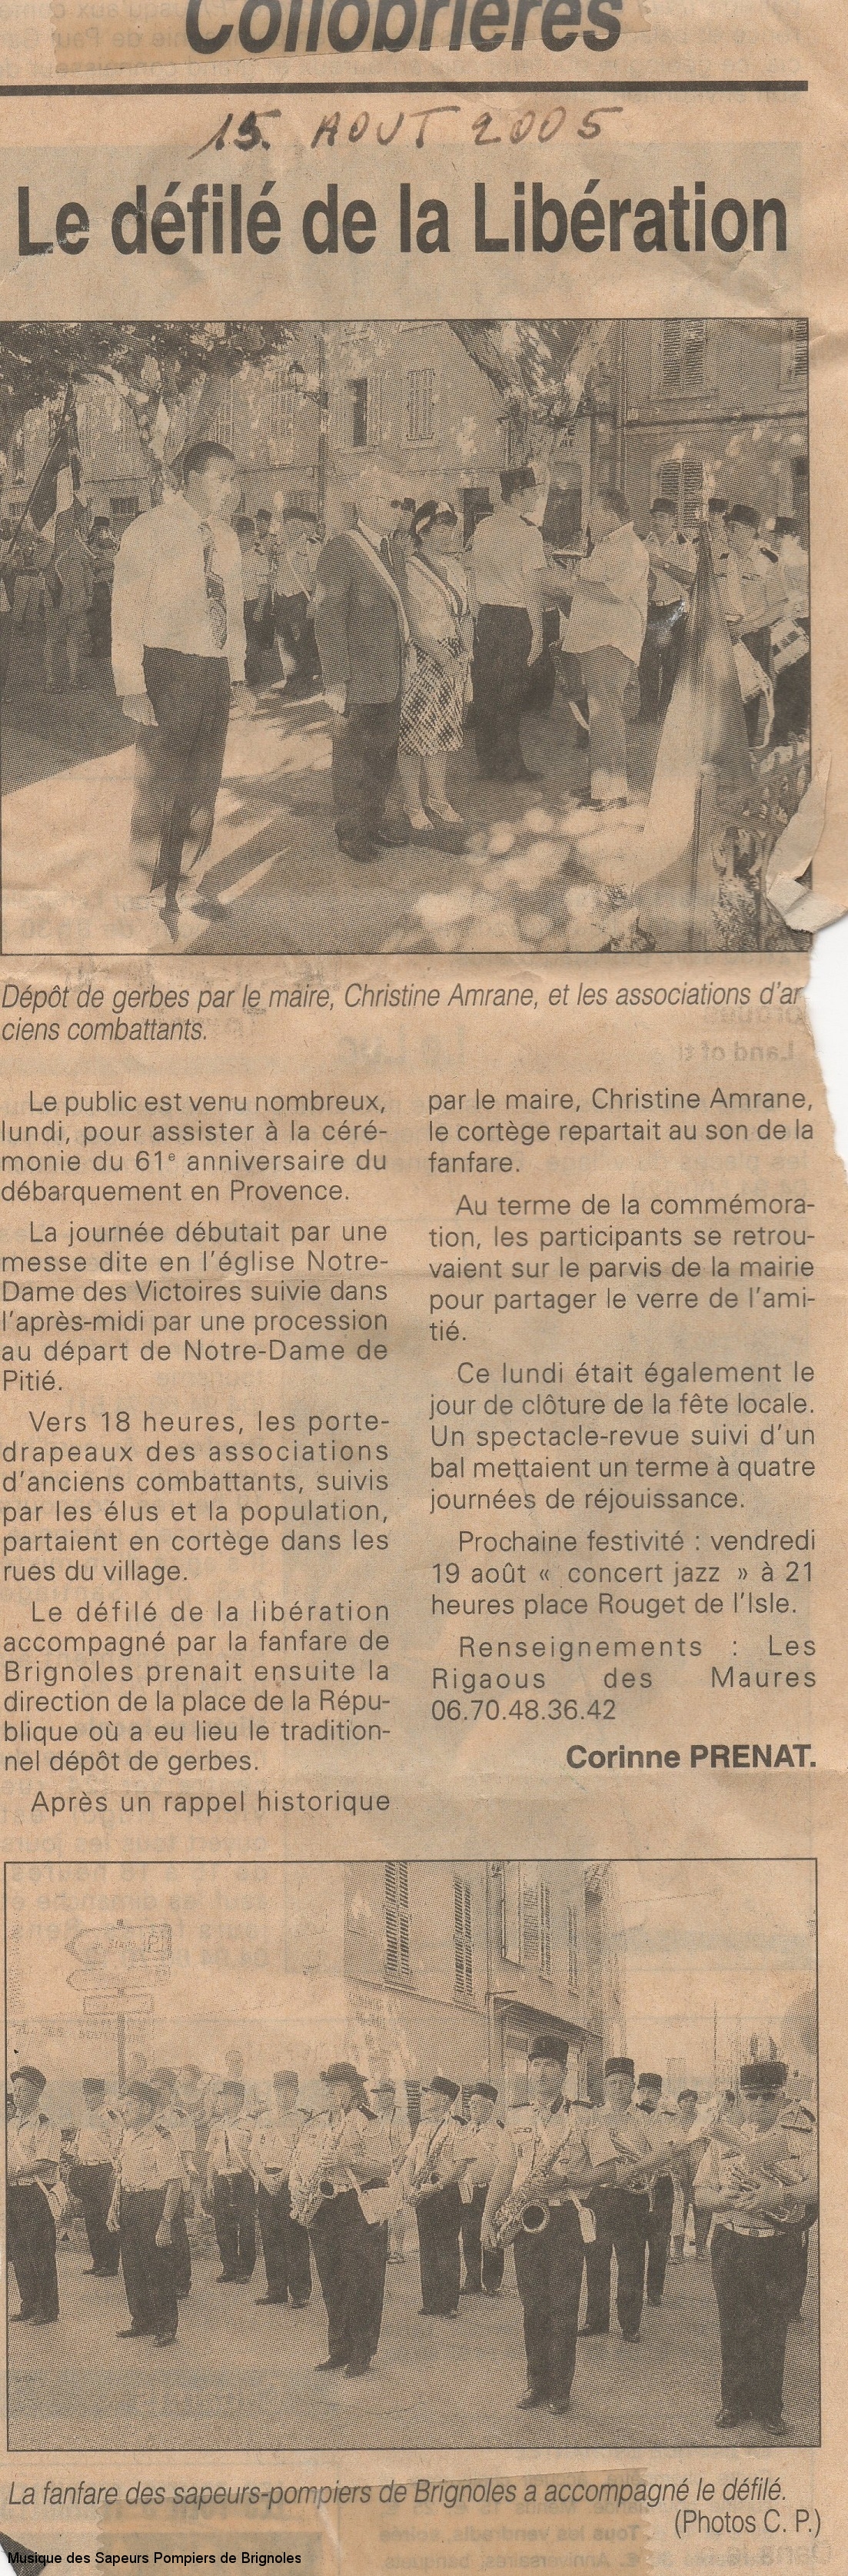 Libération Collobrières - 2005